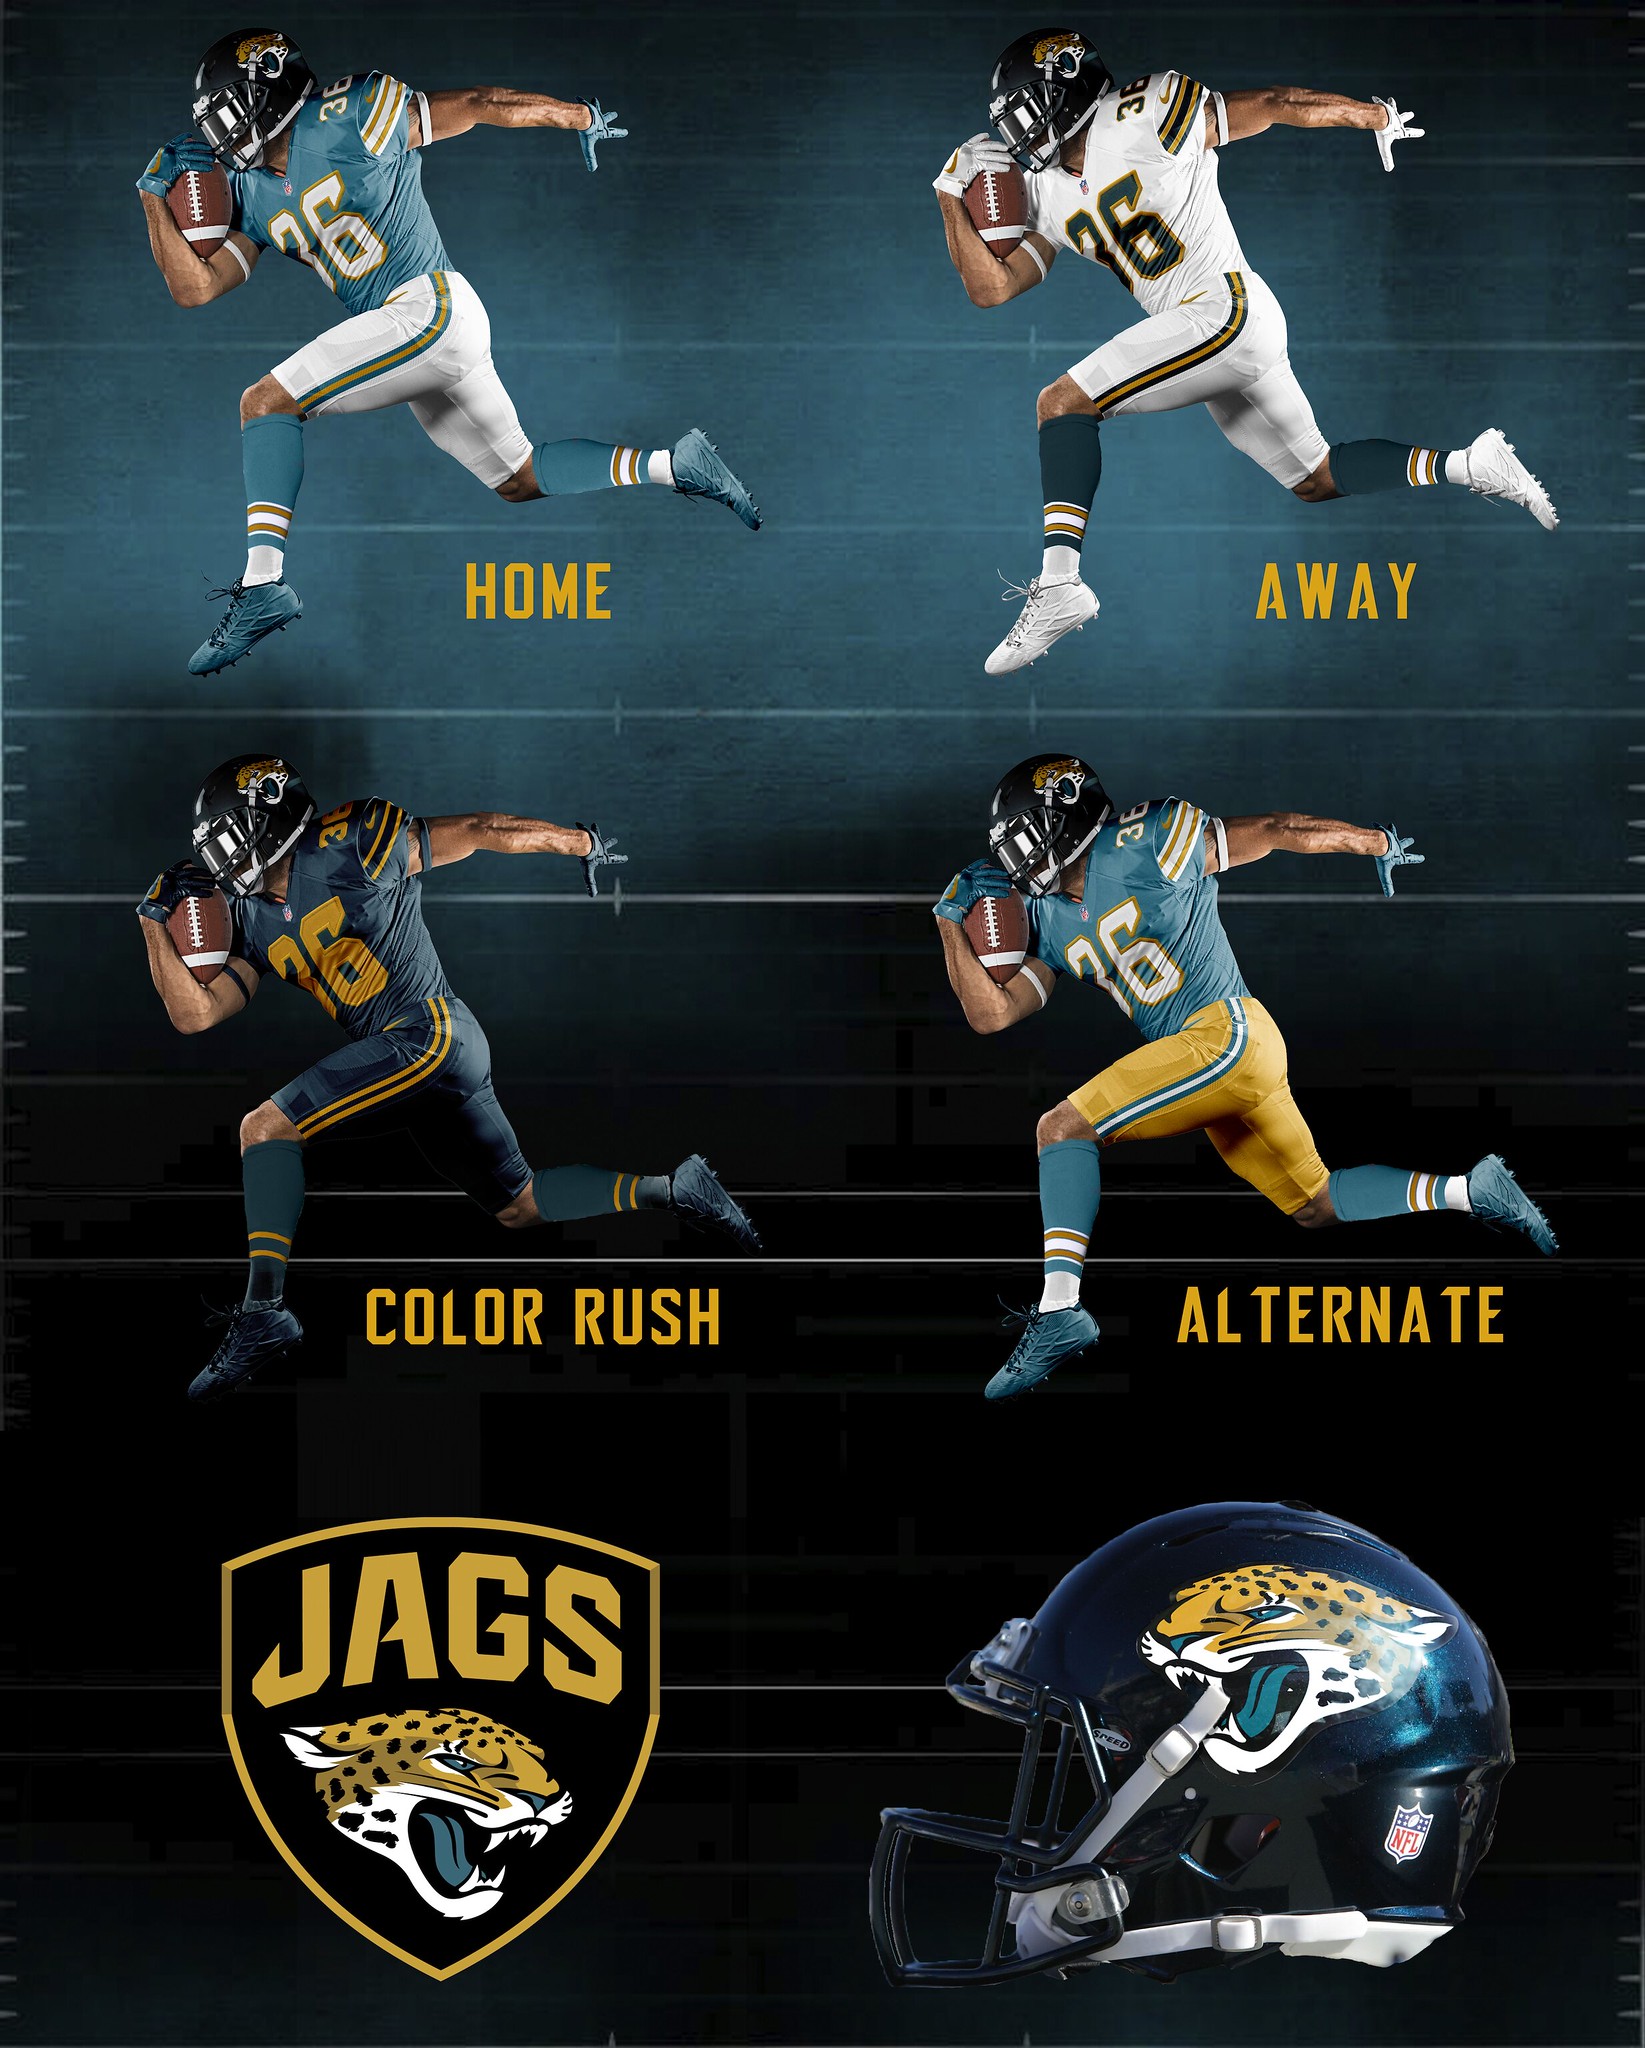 jacksonville jaguars uniforms today